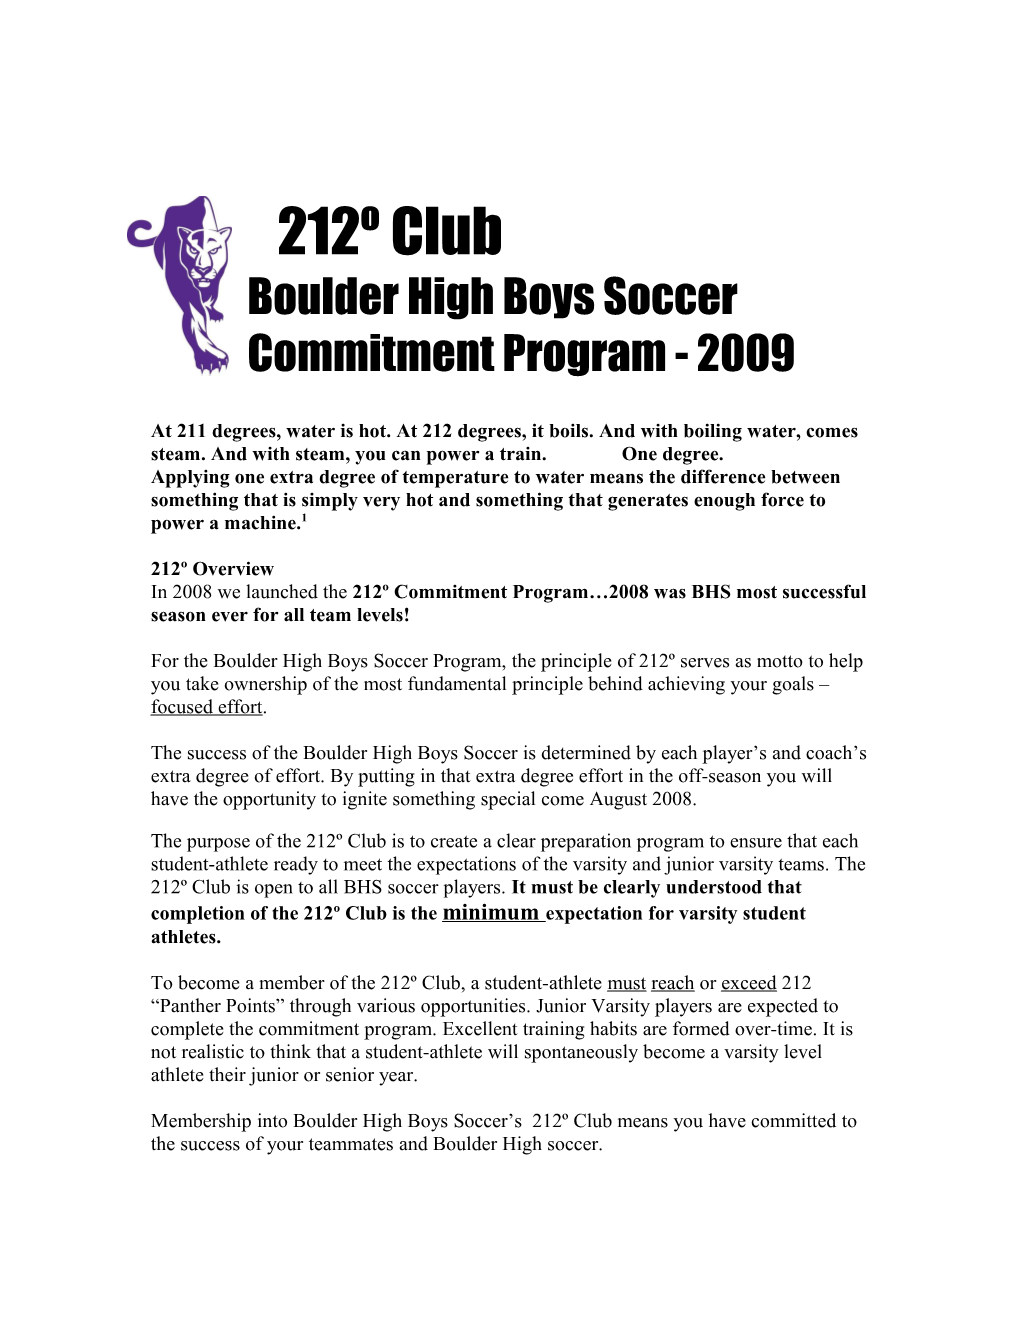 Boulder High Boys Soccer Commitment Program - 2009